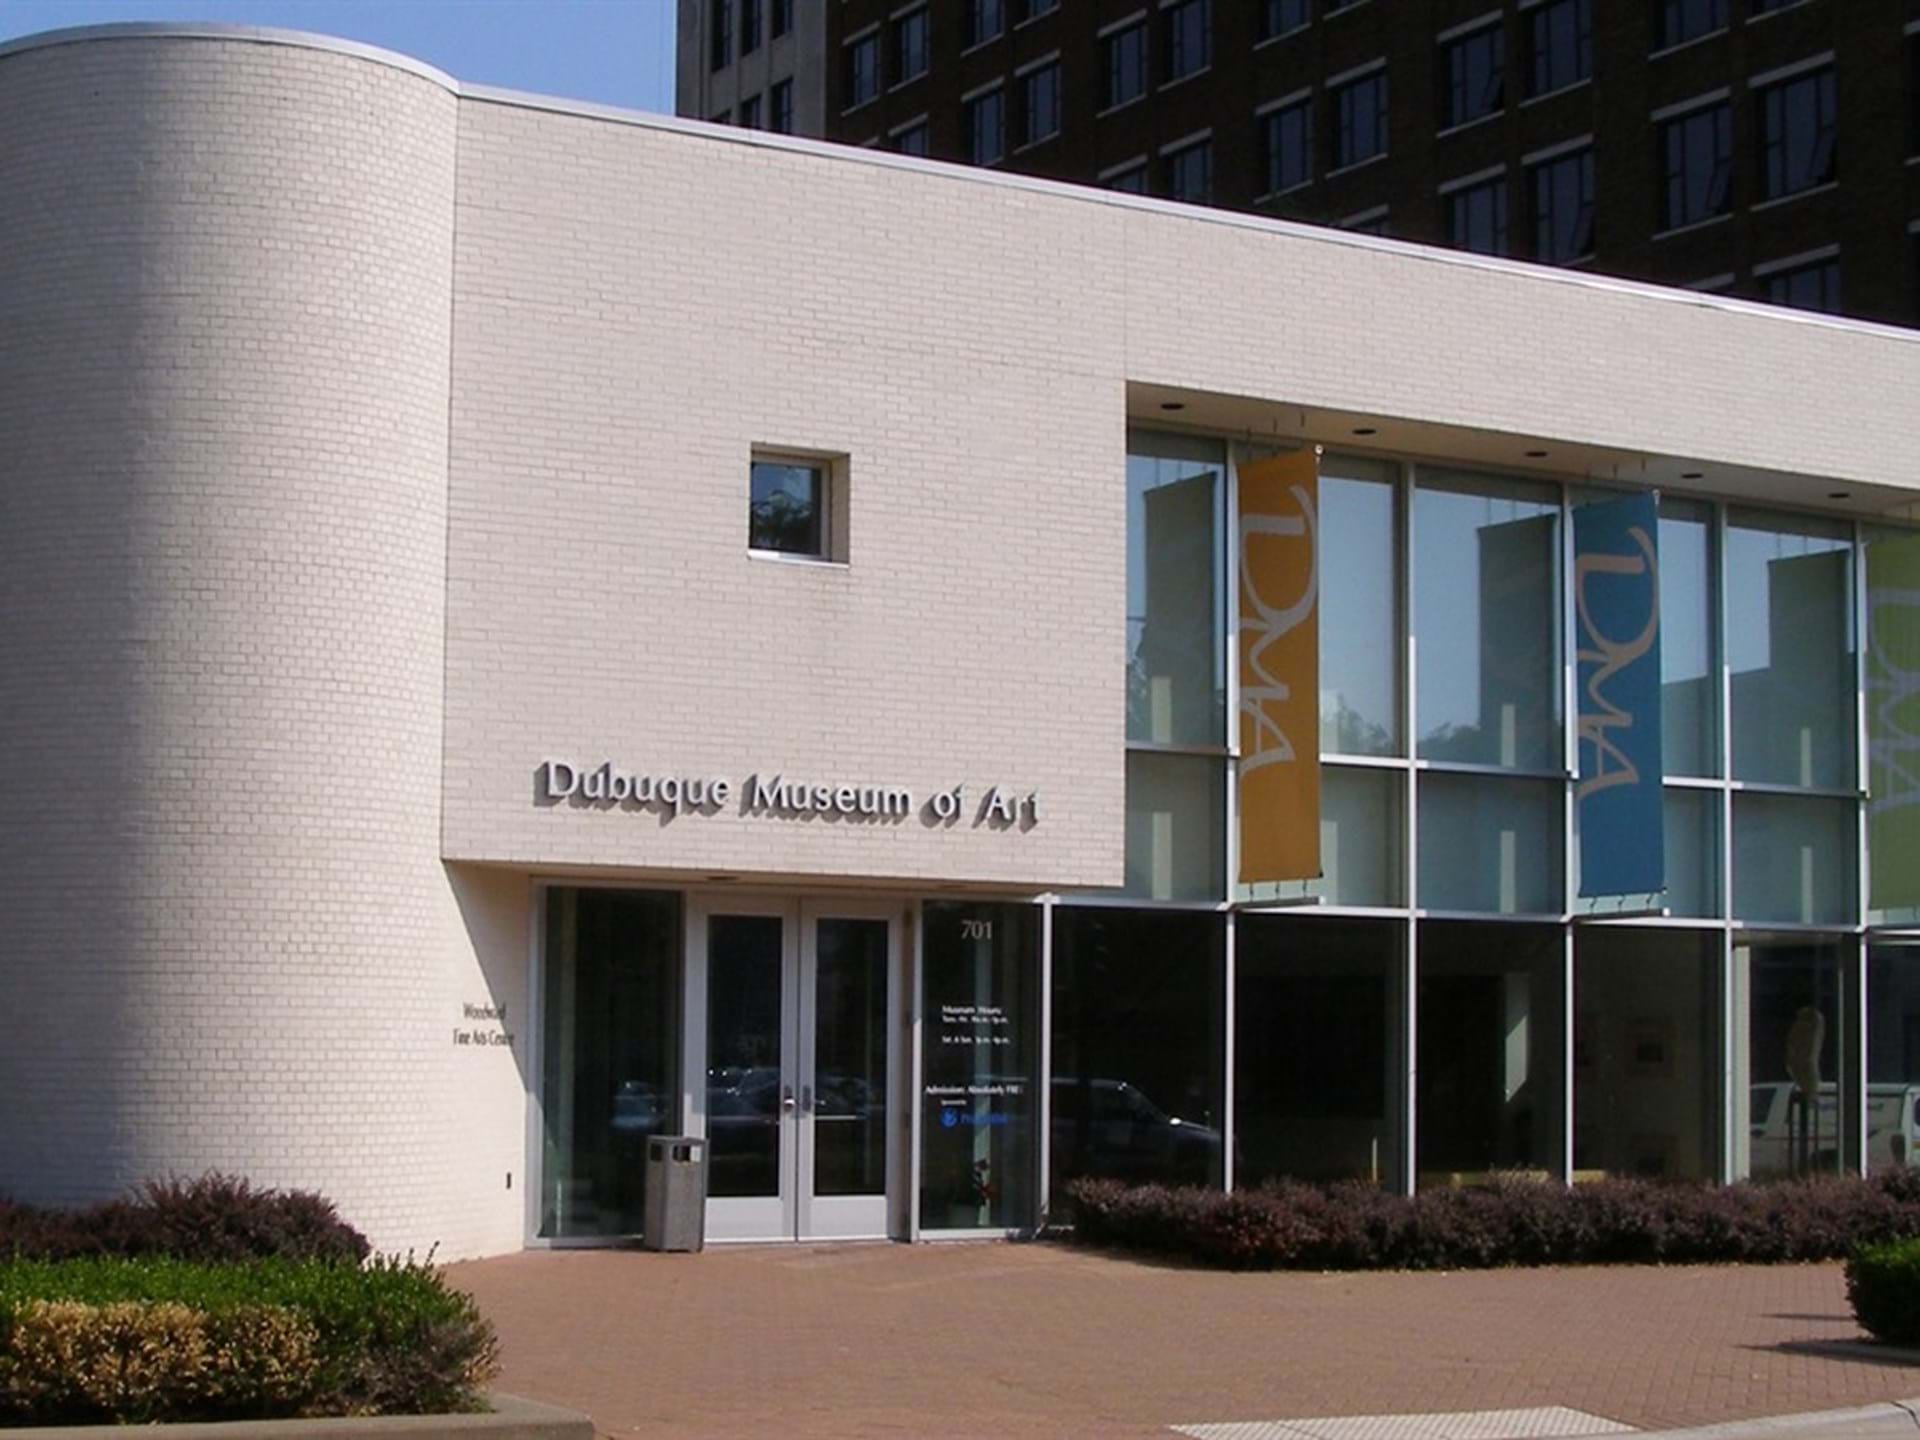 Dubuque Museum of Art